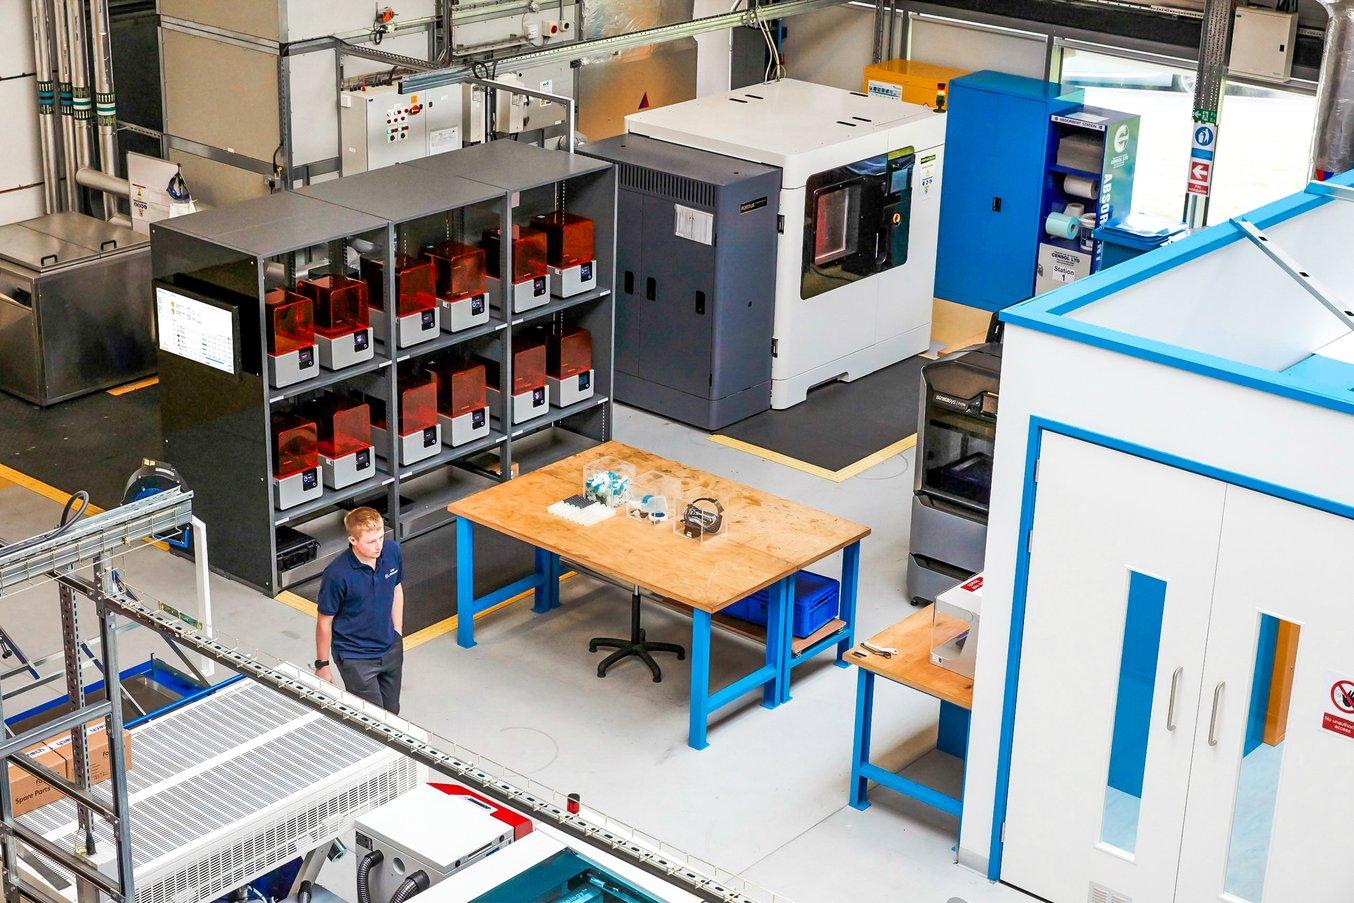 Das AMRC der University of Sheffield nutzt eine Flotte von 12 SLA 3D-Druckern für die meisten Anwendungen im Bereich Maschinenbau und Fertigung und reserviert fünf industrielle FDM-Drucker ausschließlich für größere Teile.